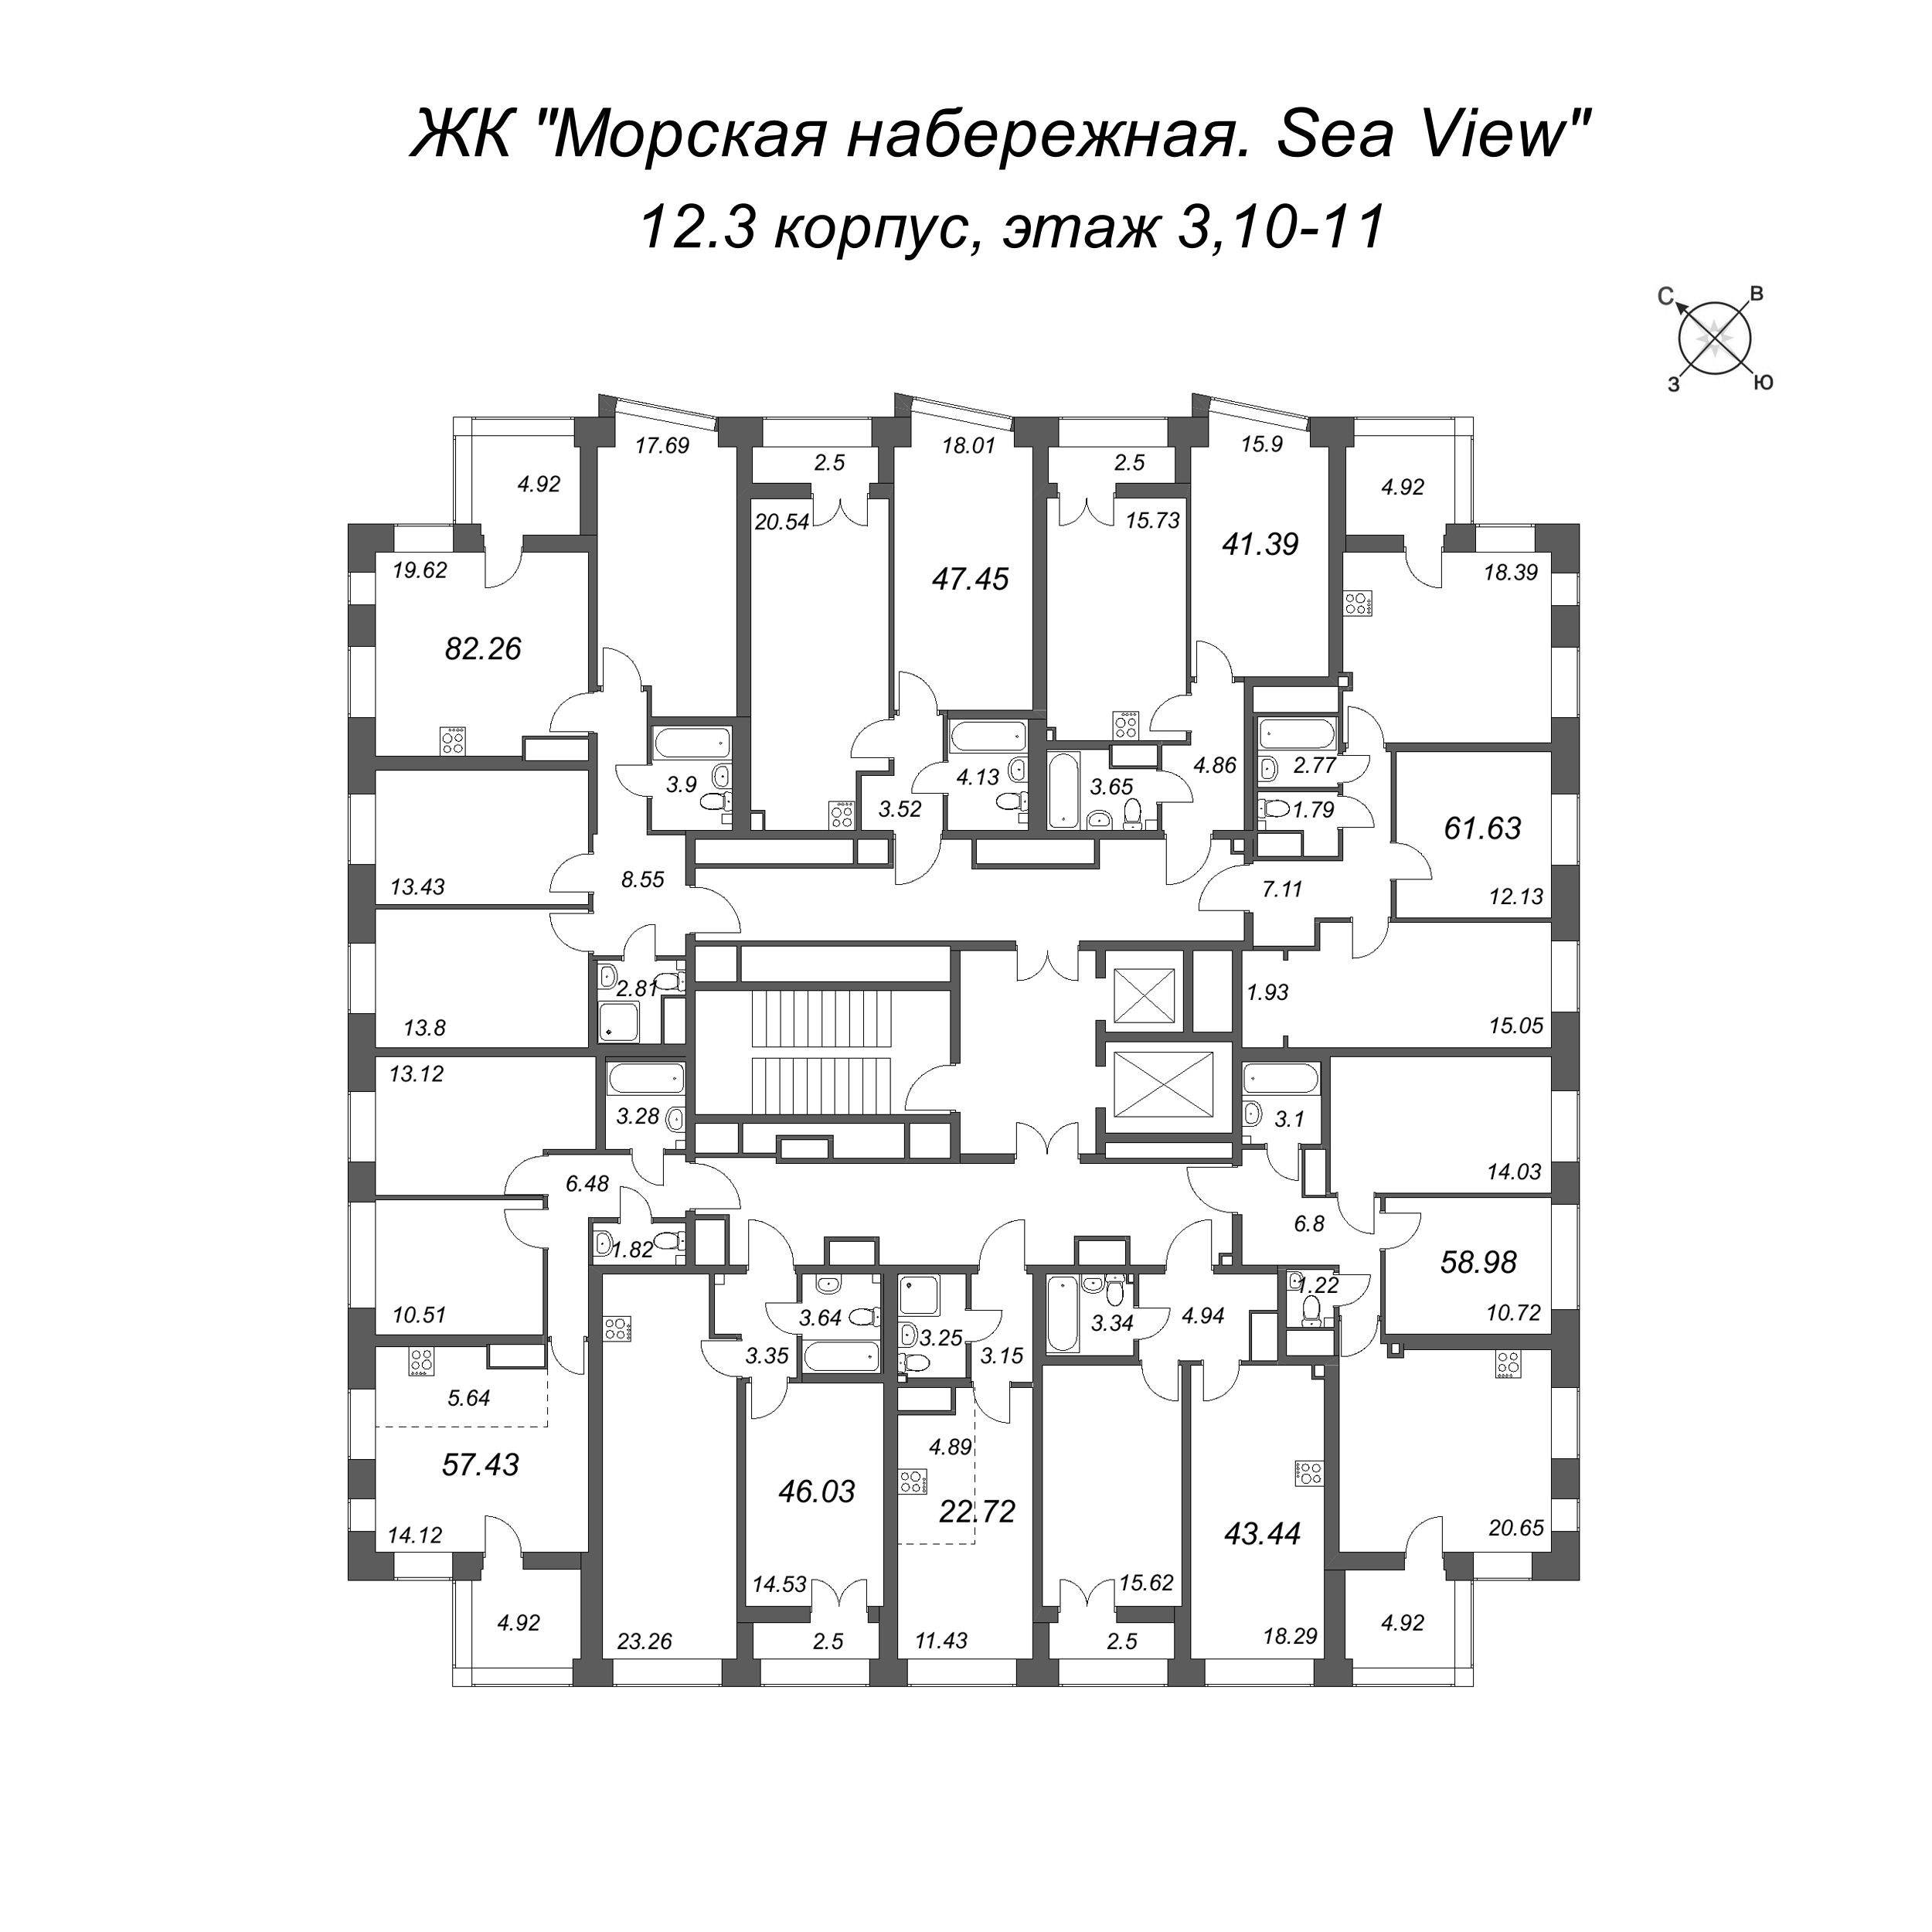 4-комнатная (Евро) квартира, 82.26 м² в ЖК "Морская набережная. SeaView" - планировка этажа